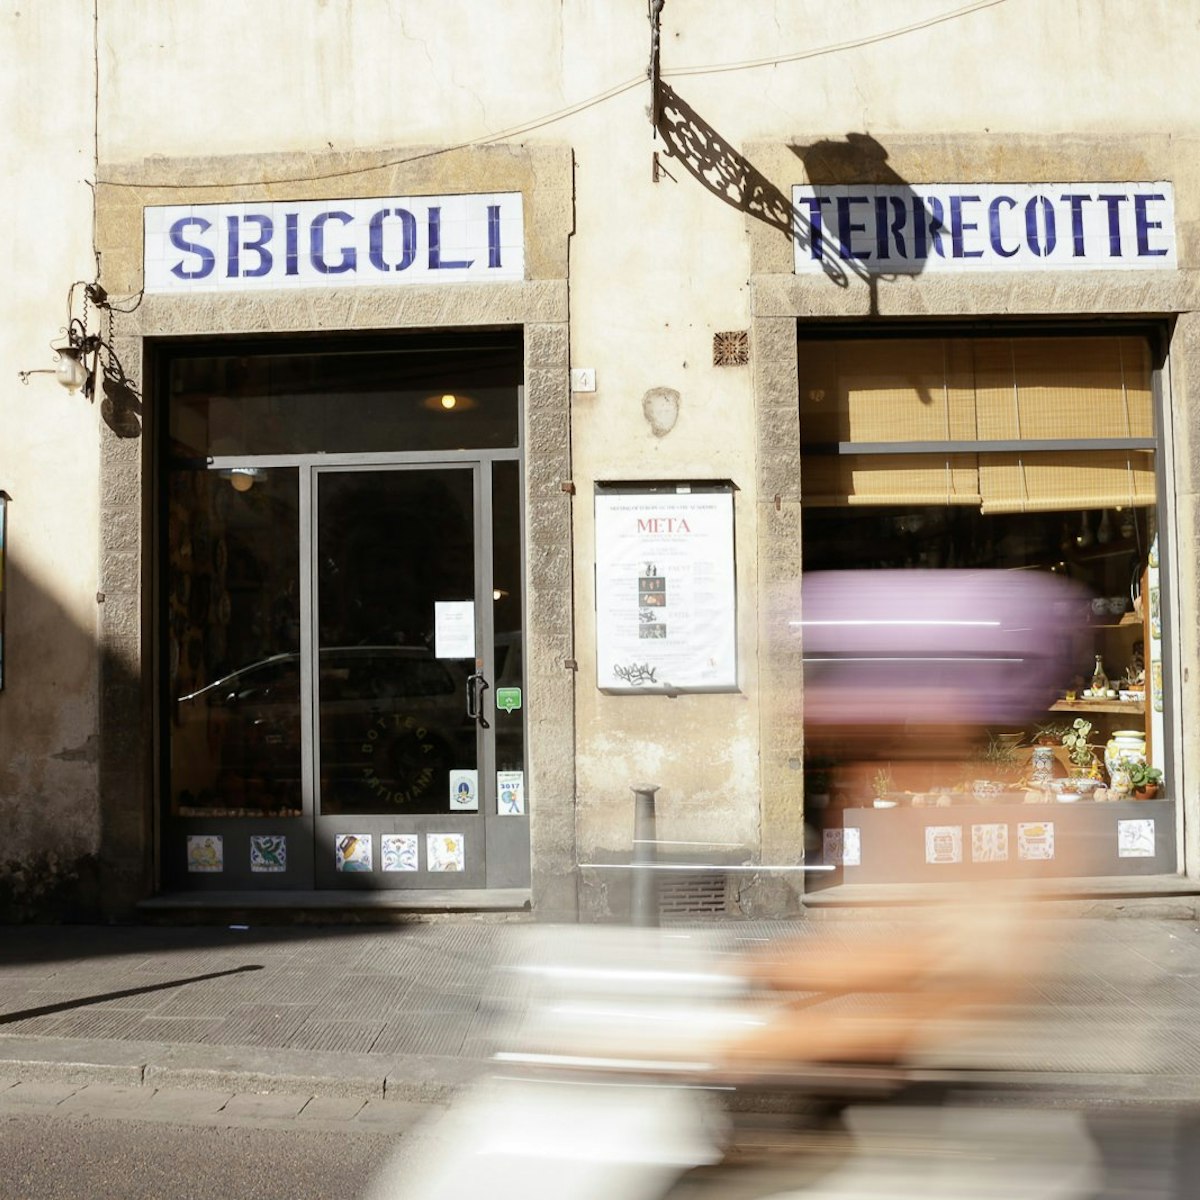 Shop front, Sbigoli.